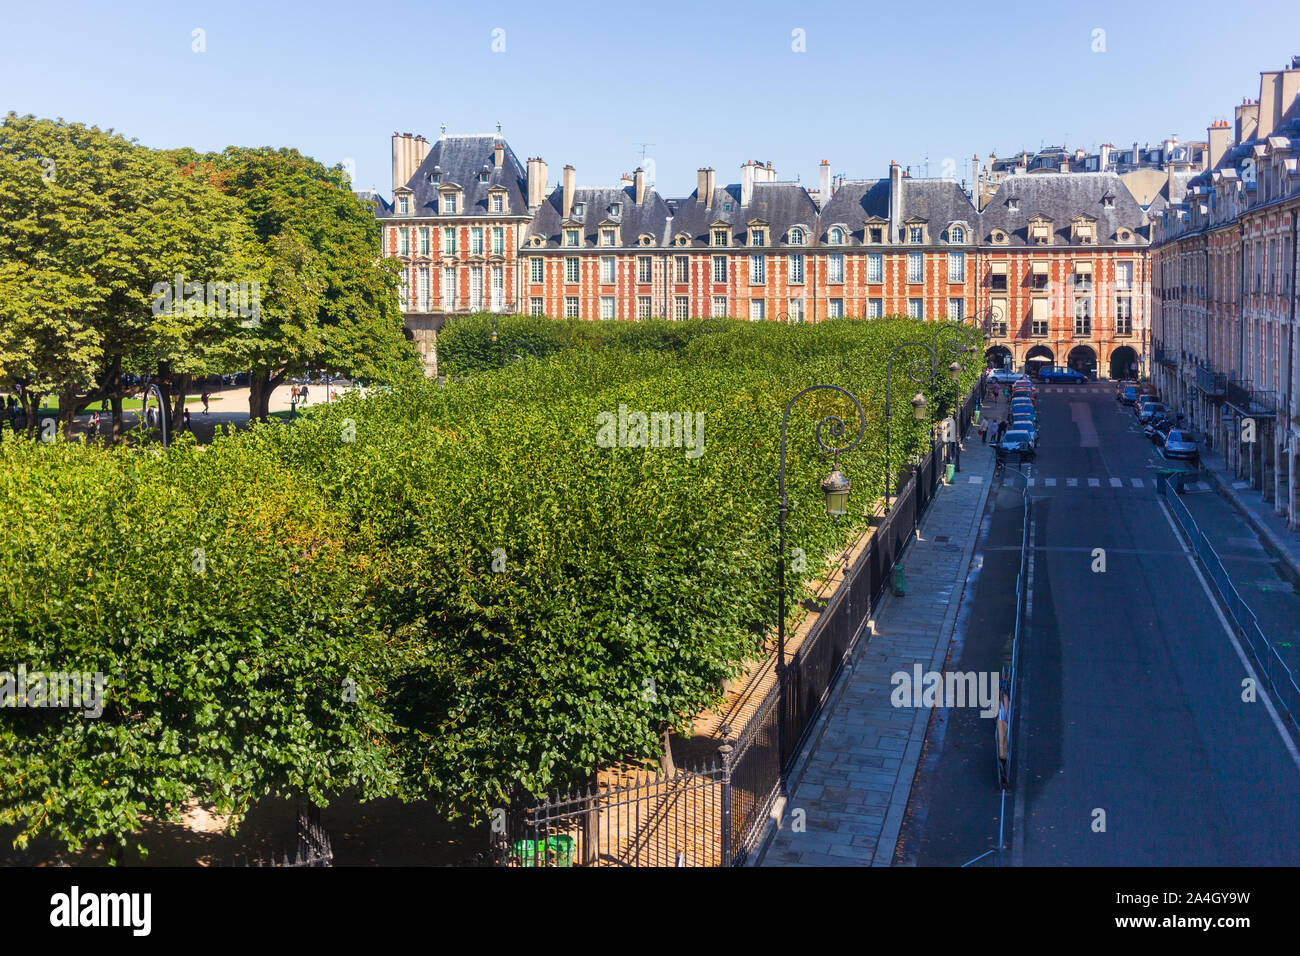 Paris, France - 2 septembre 2018 : la Place des Vosges vue d'en haut, au deuxième étage d'un appartement, illustrant ses arbres, bâtiment Banque D'Images